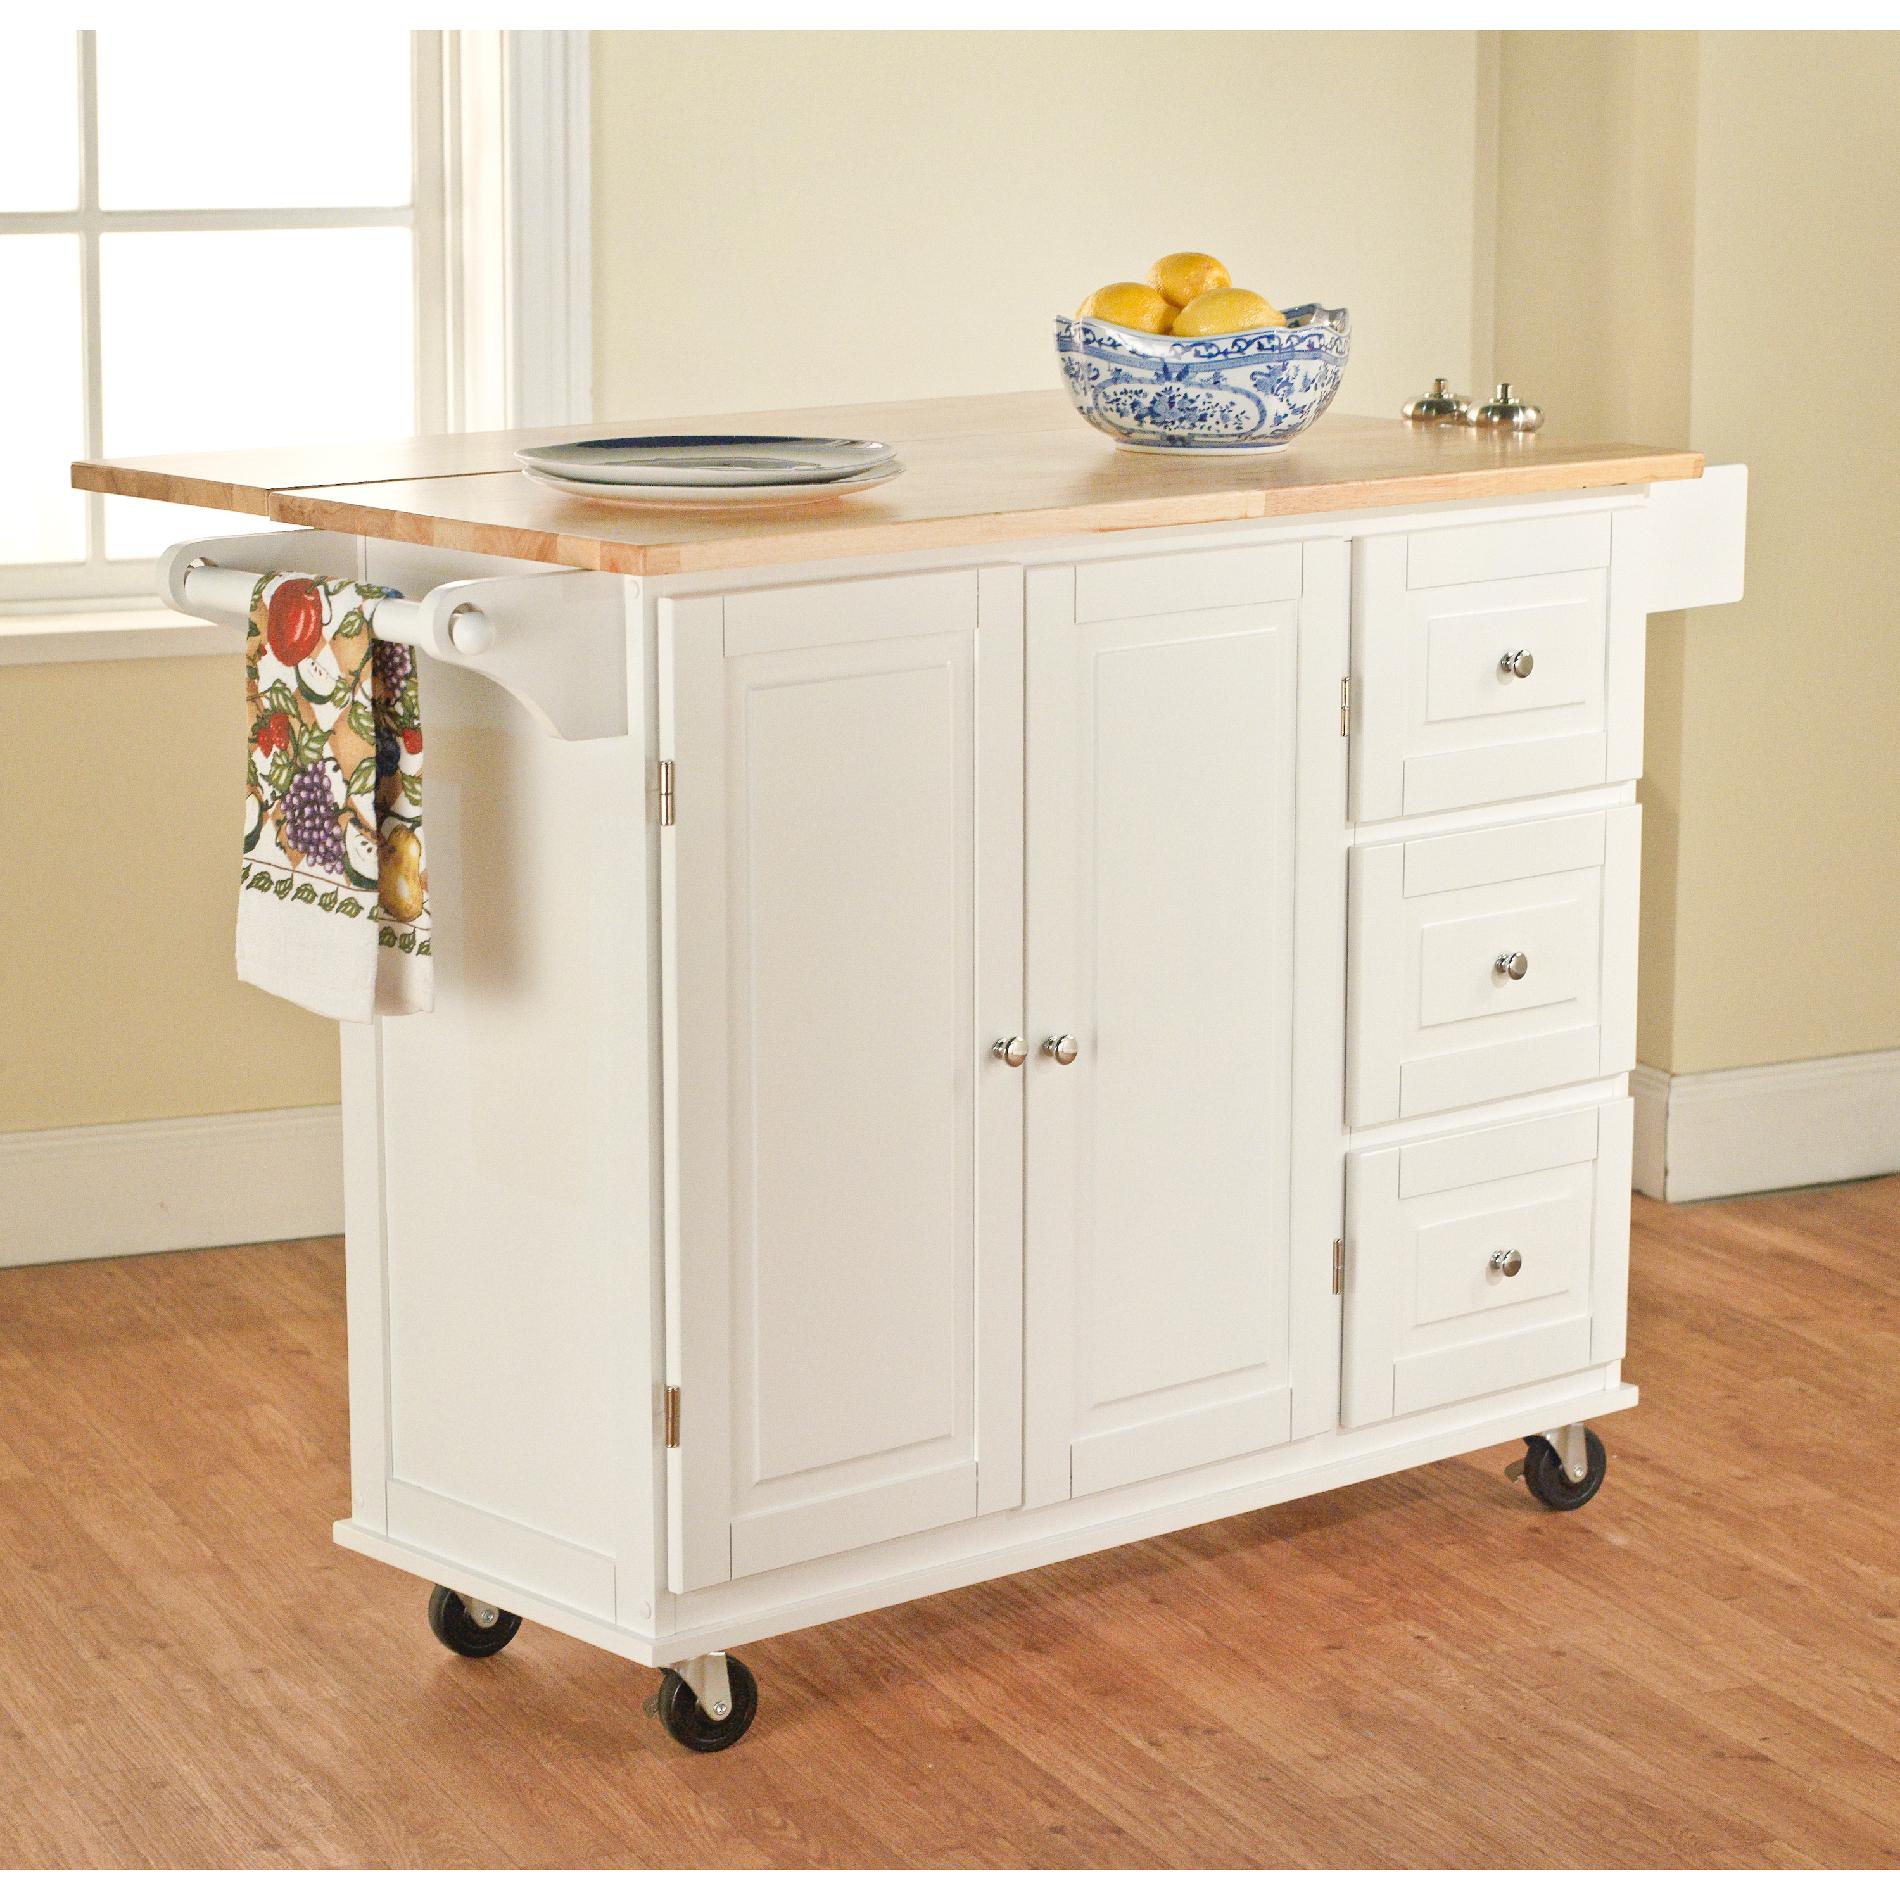 Large 3 drawer Kitchen Cart